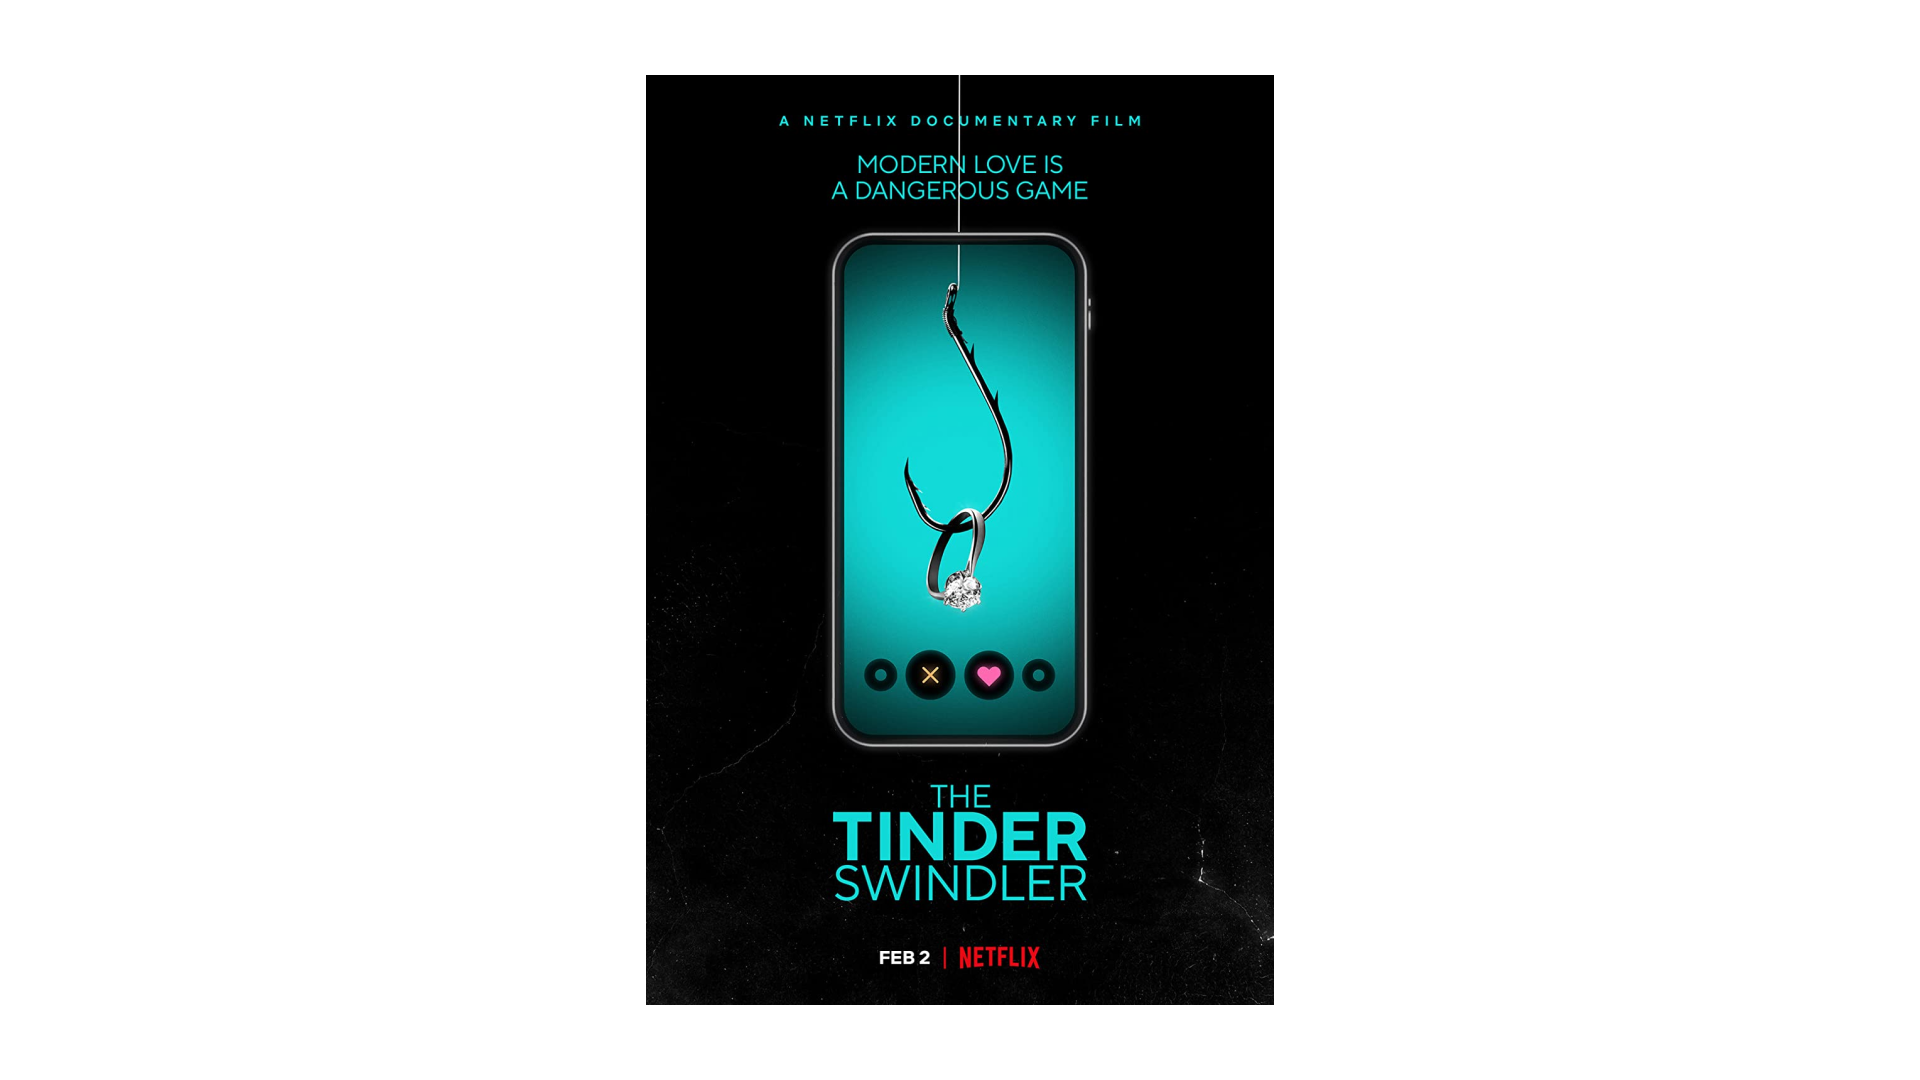 Tinder Swindler Poster 